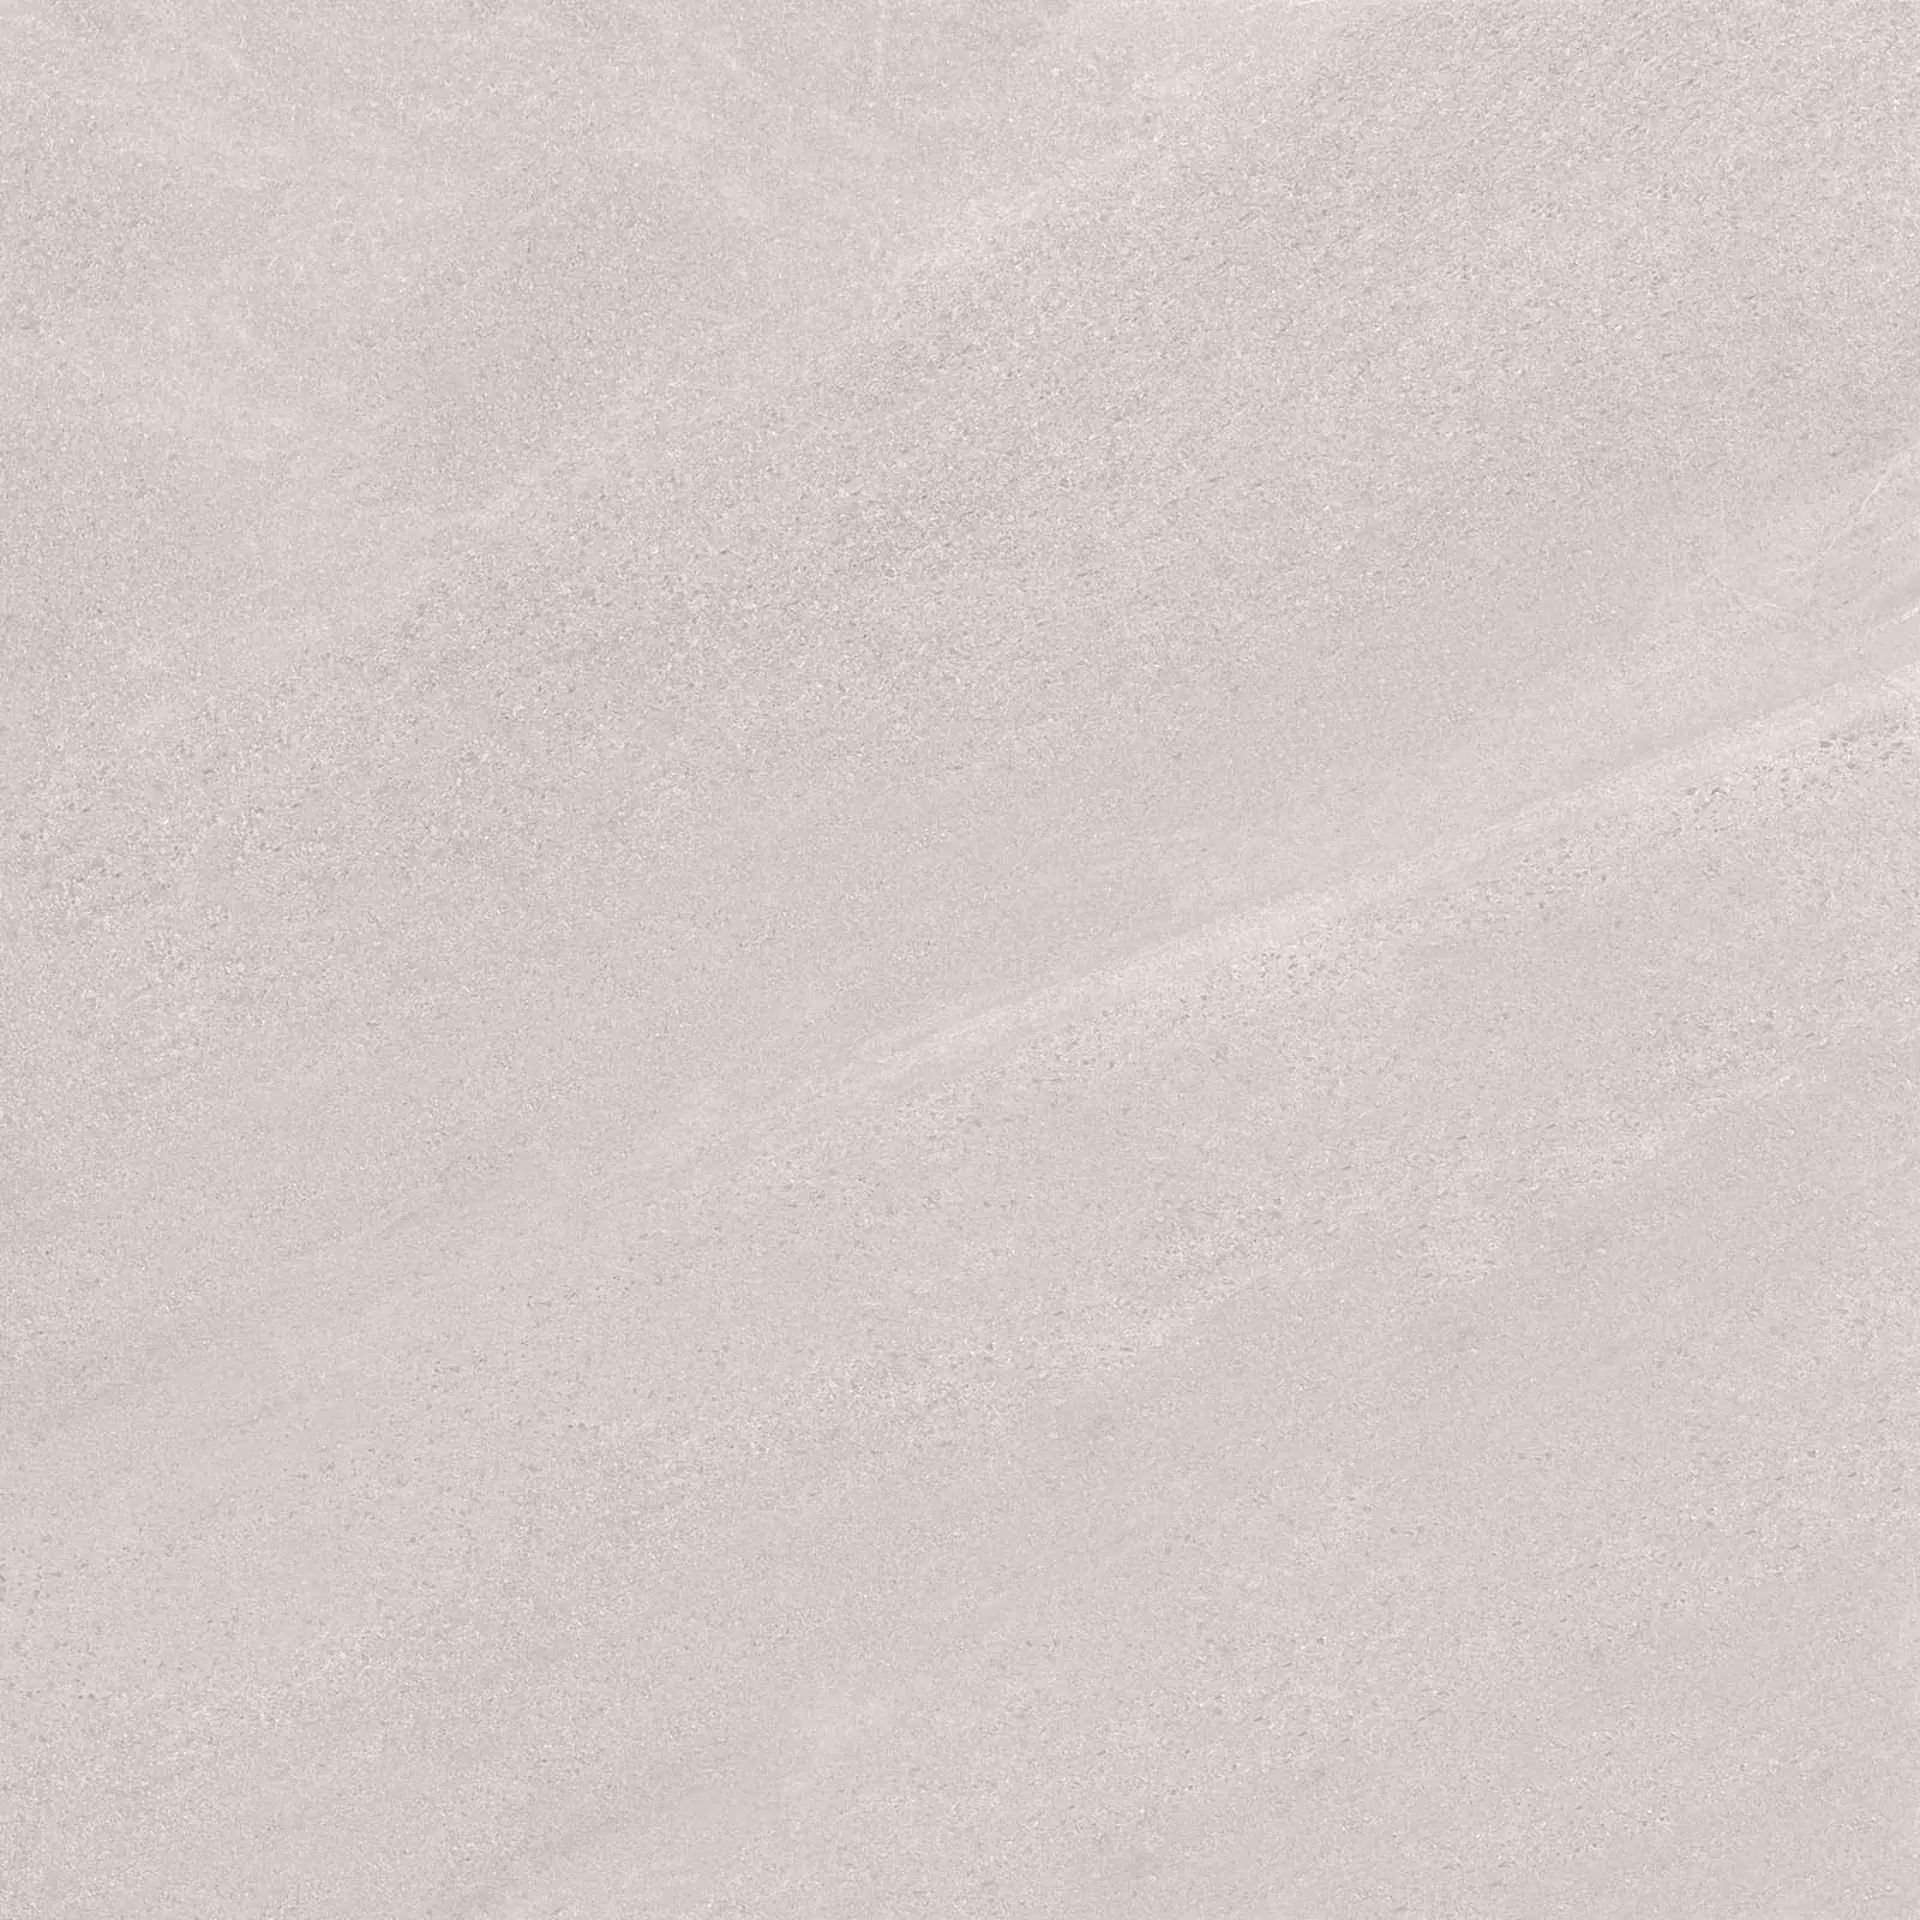 Keope Chorus White Naturale – Matt 434F3431 120x120cm rectified 9mm